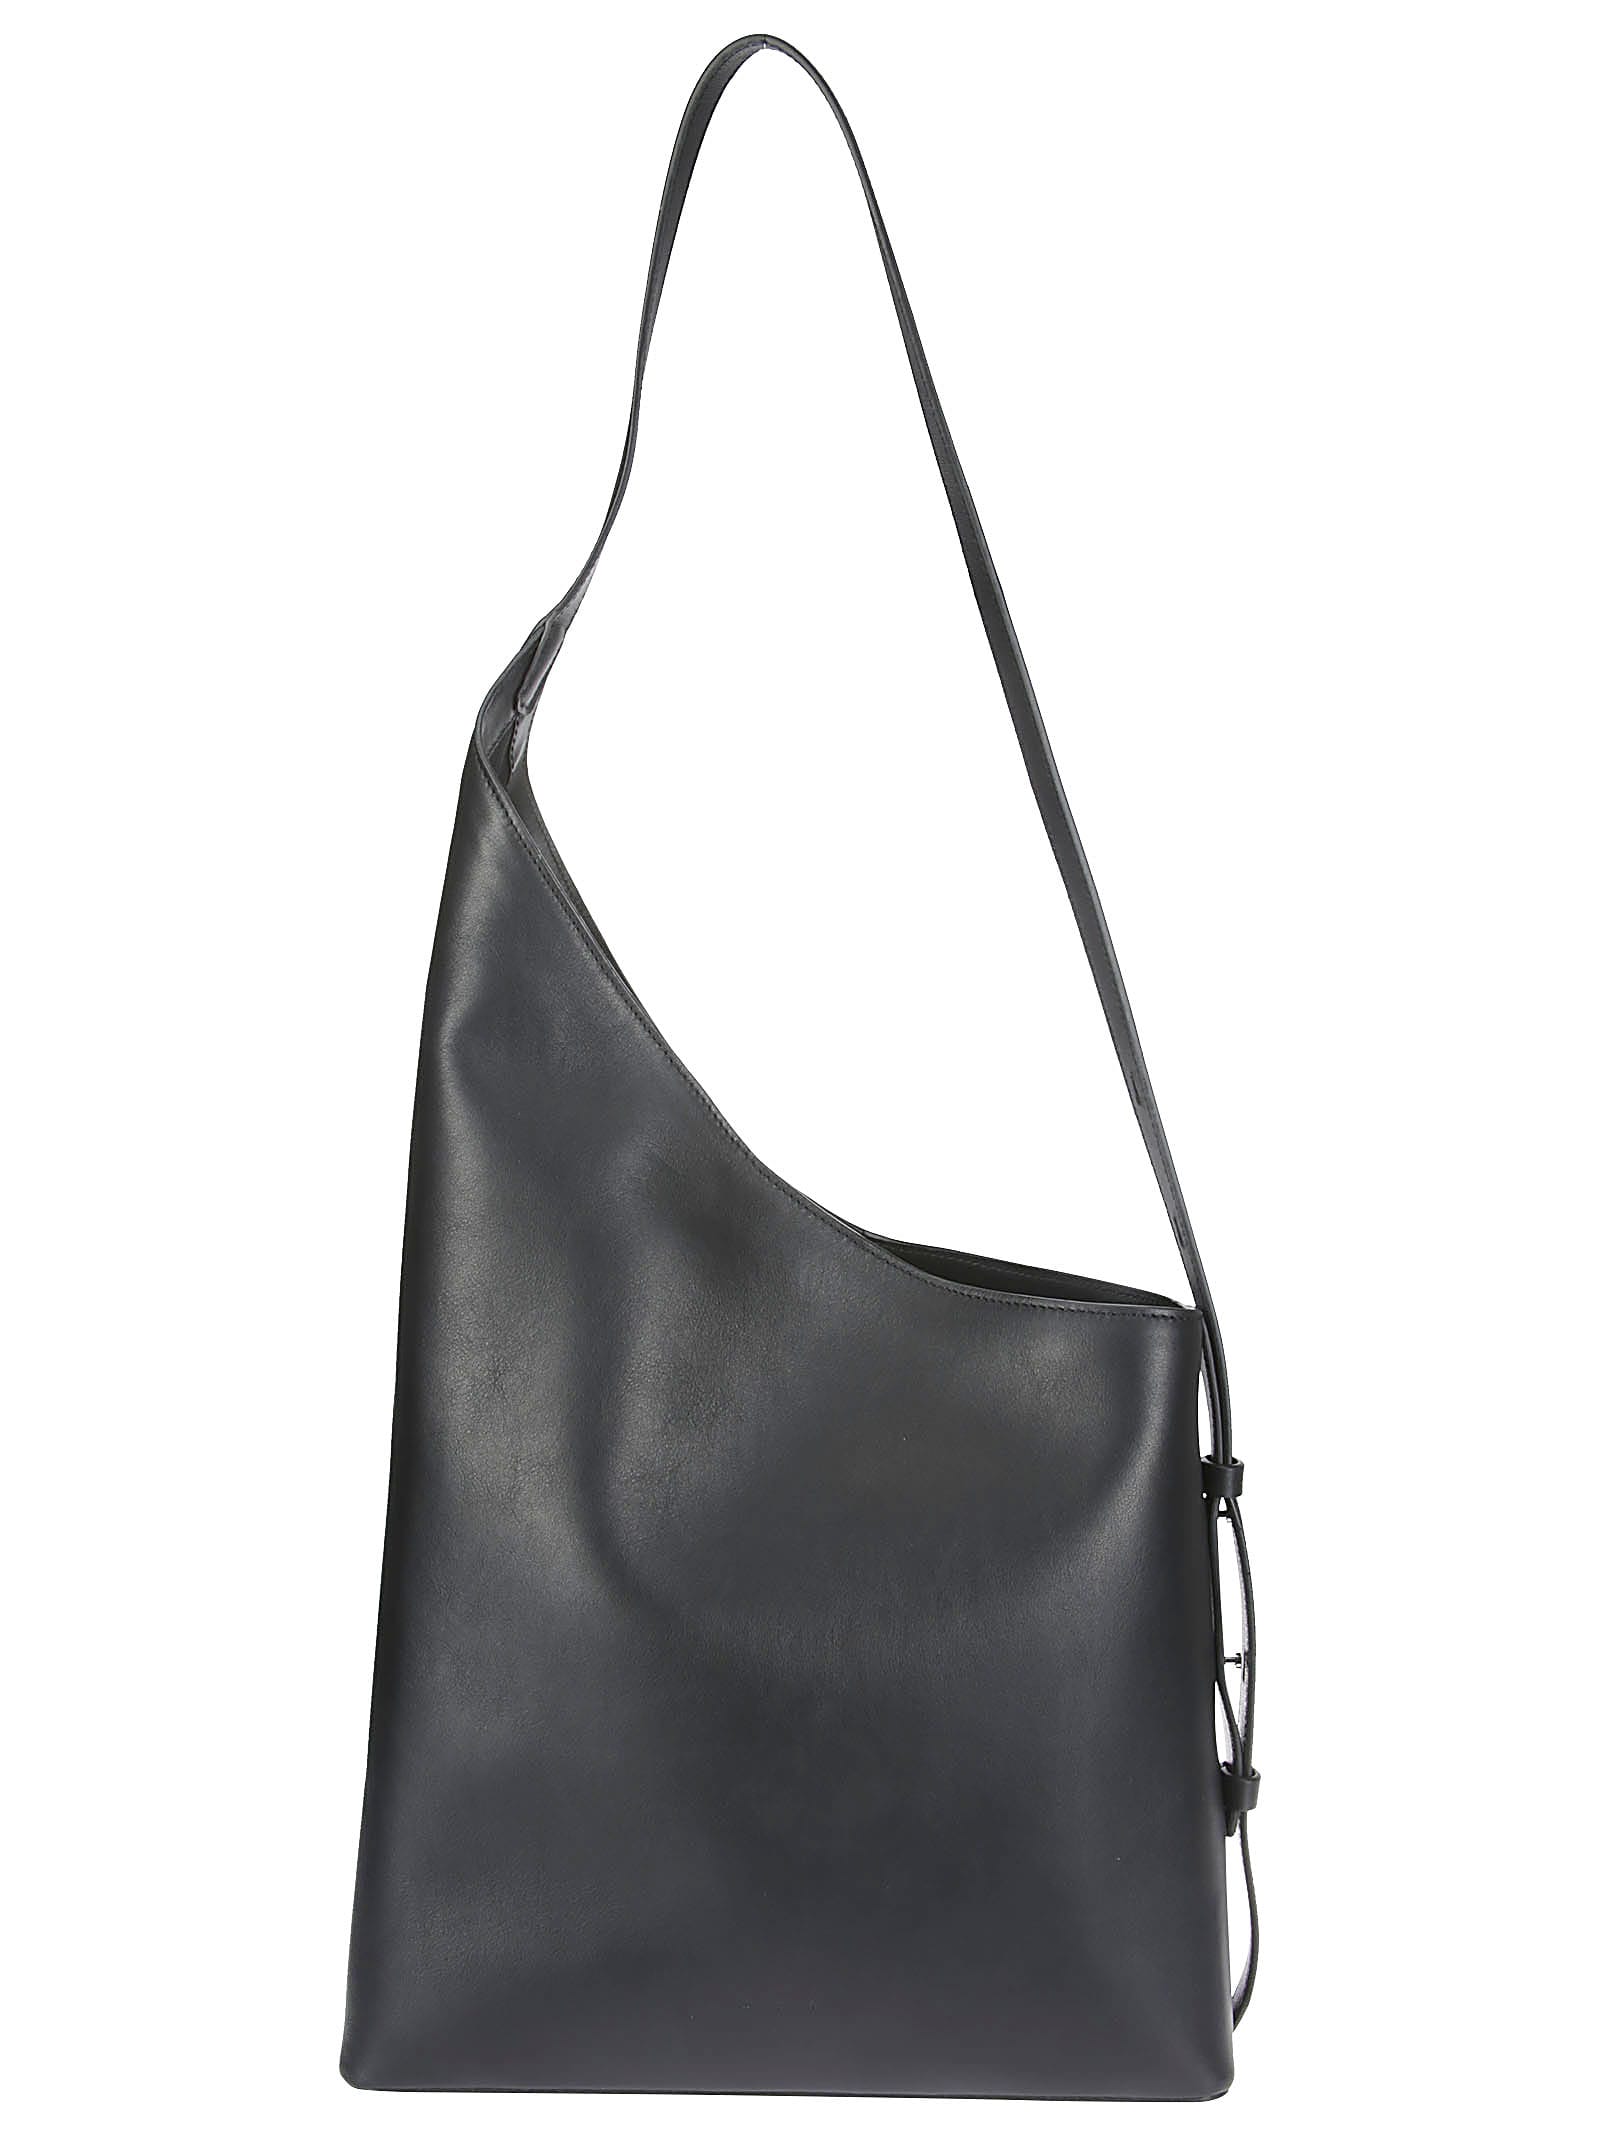 Buy AESTHER EKME Baguette Leather Shoulder Bag - Black At 40% Off